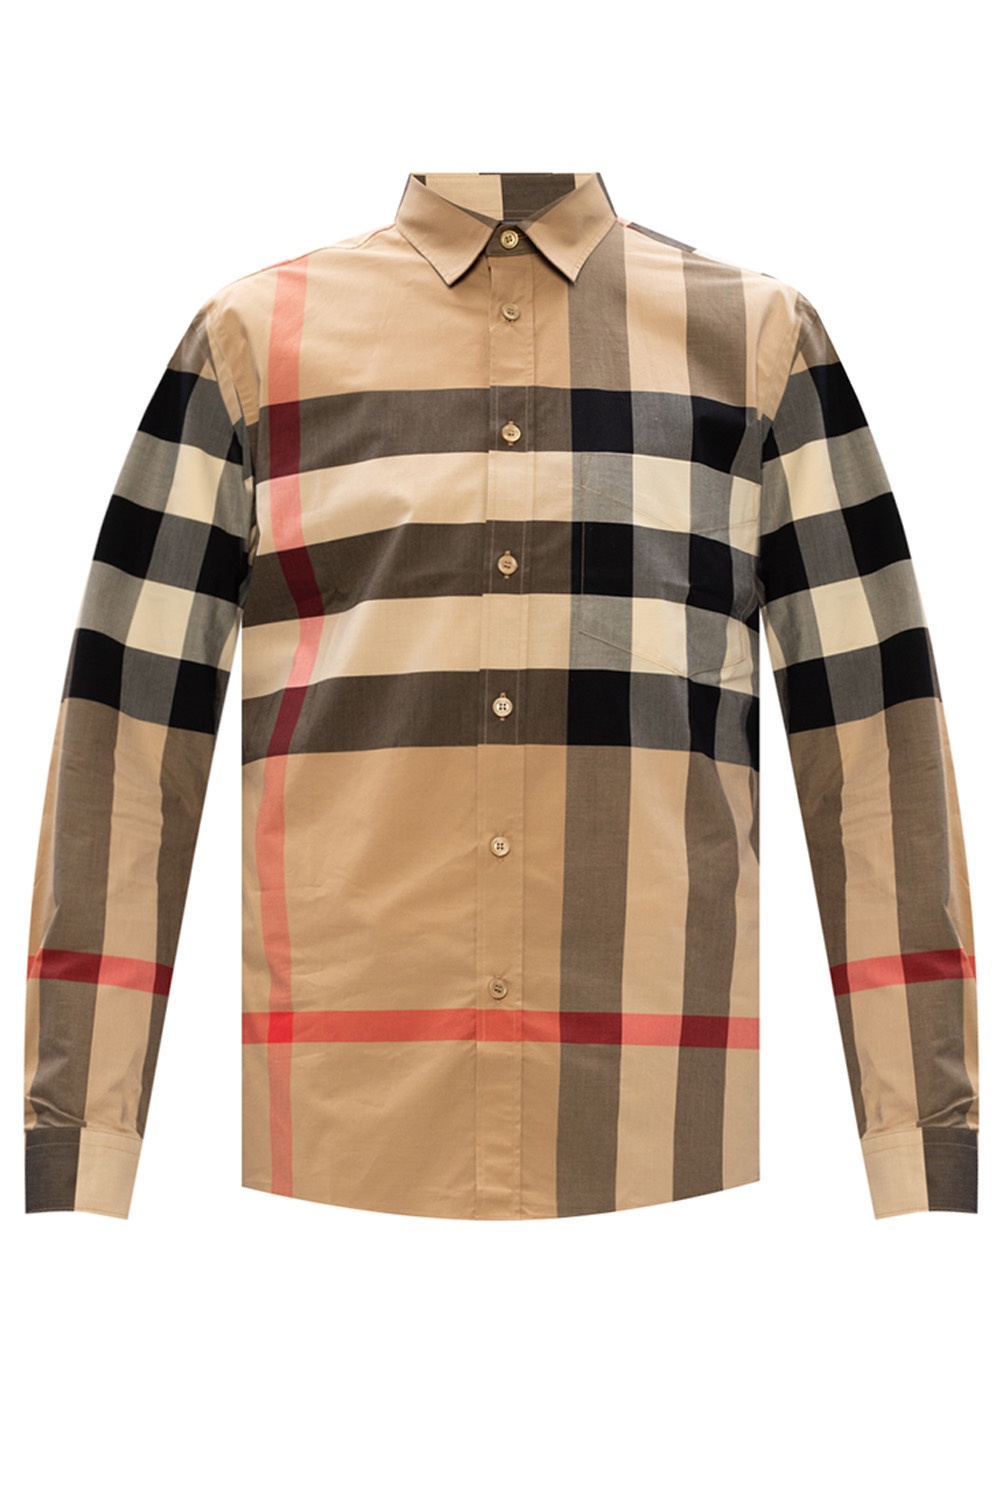 Burberry Checked shirt | Men's Clothing | Vitkac